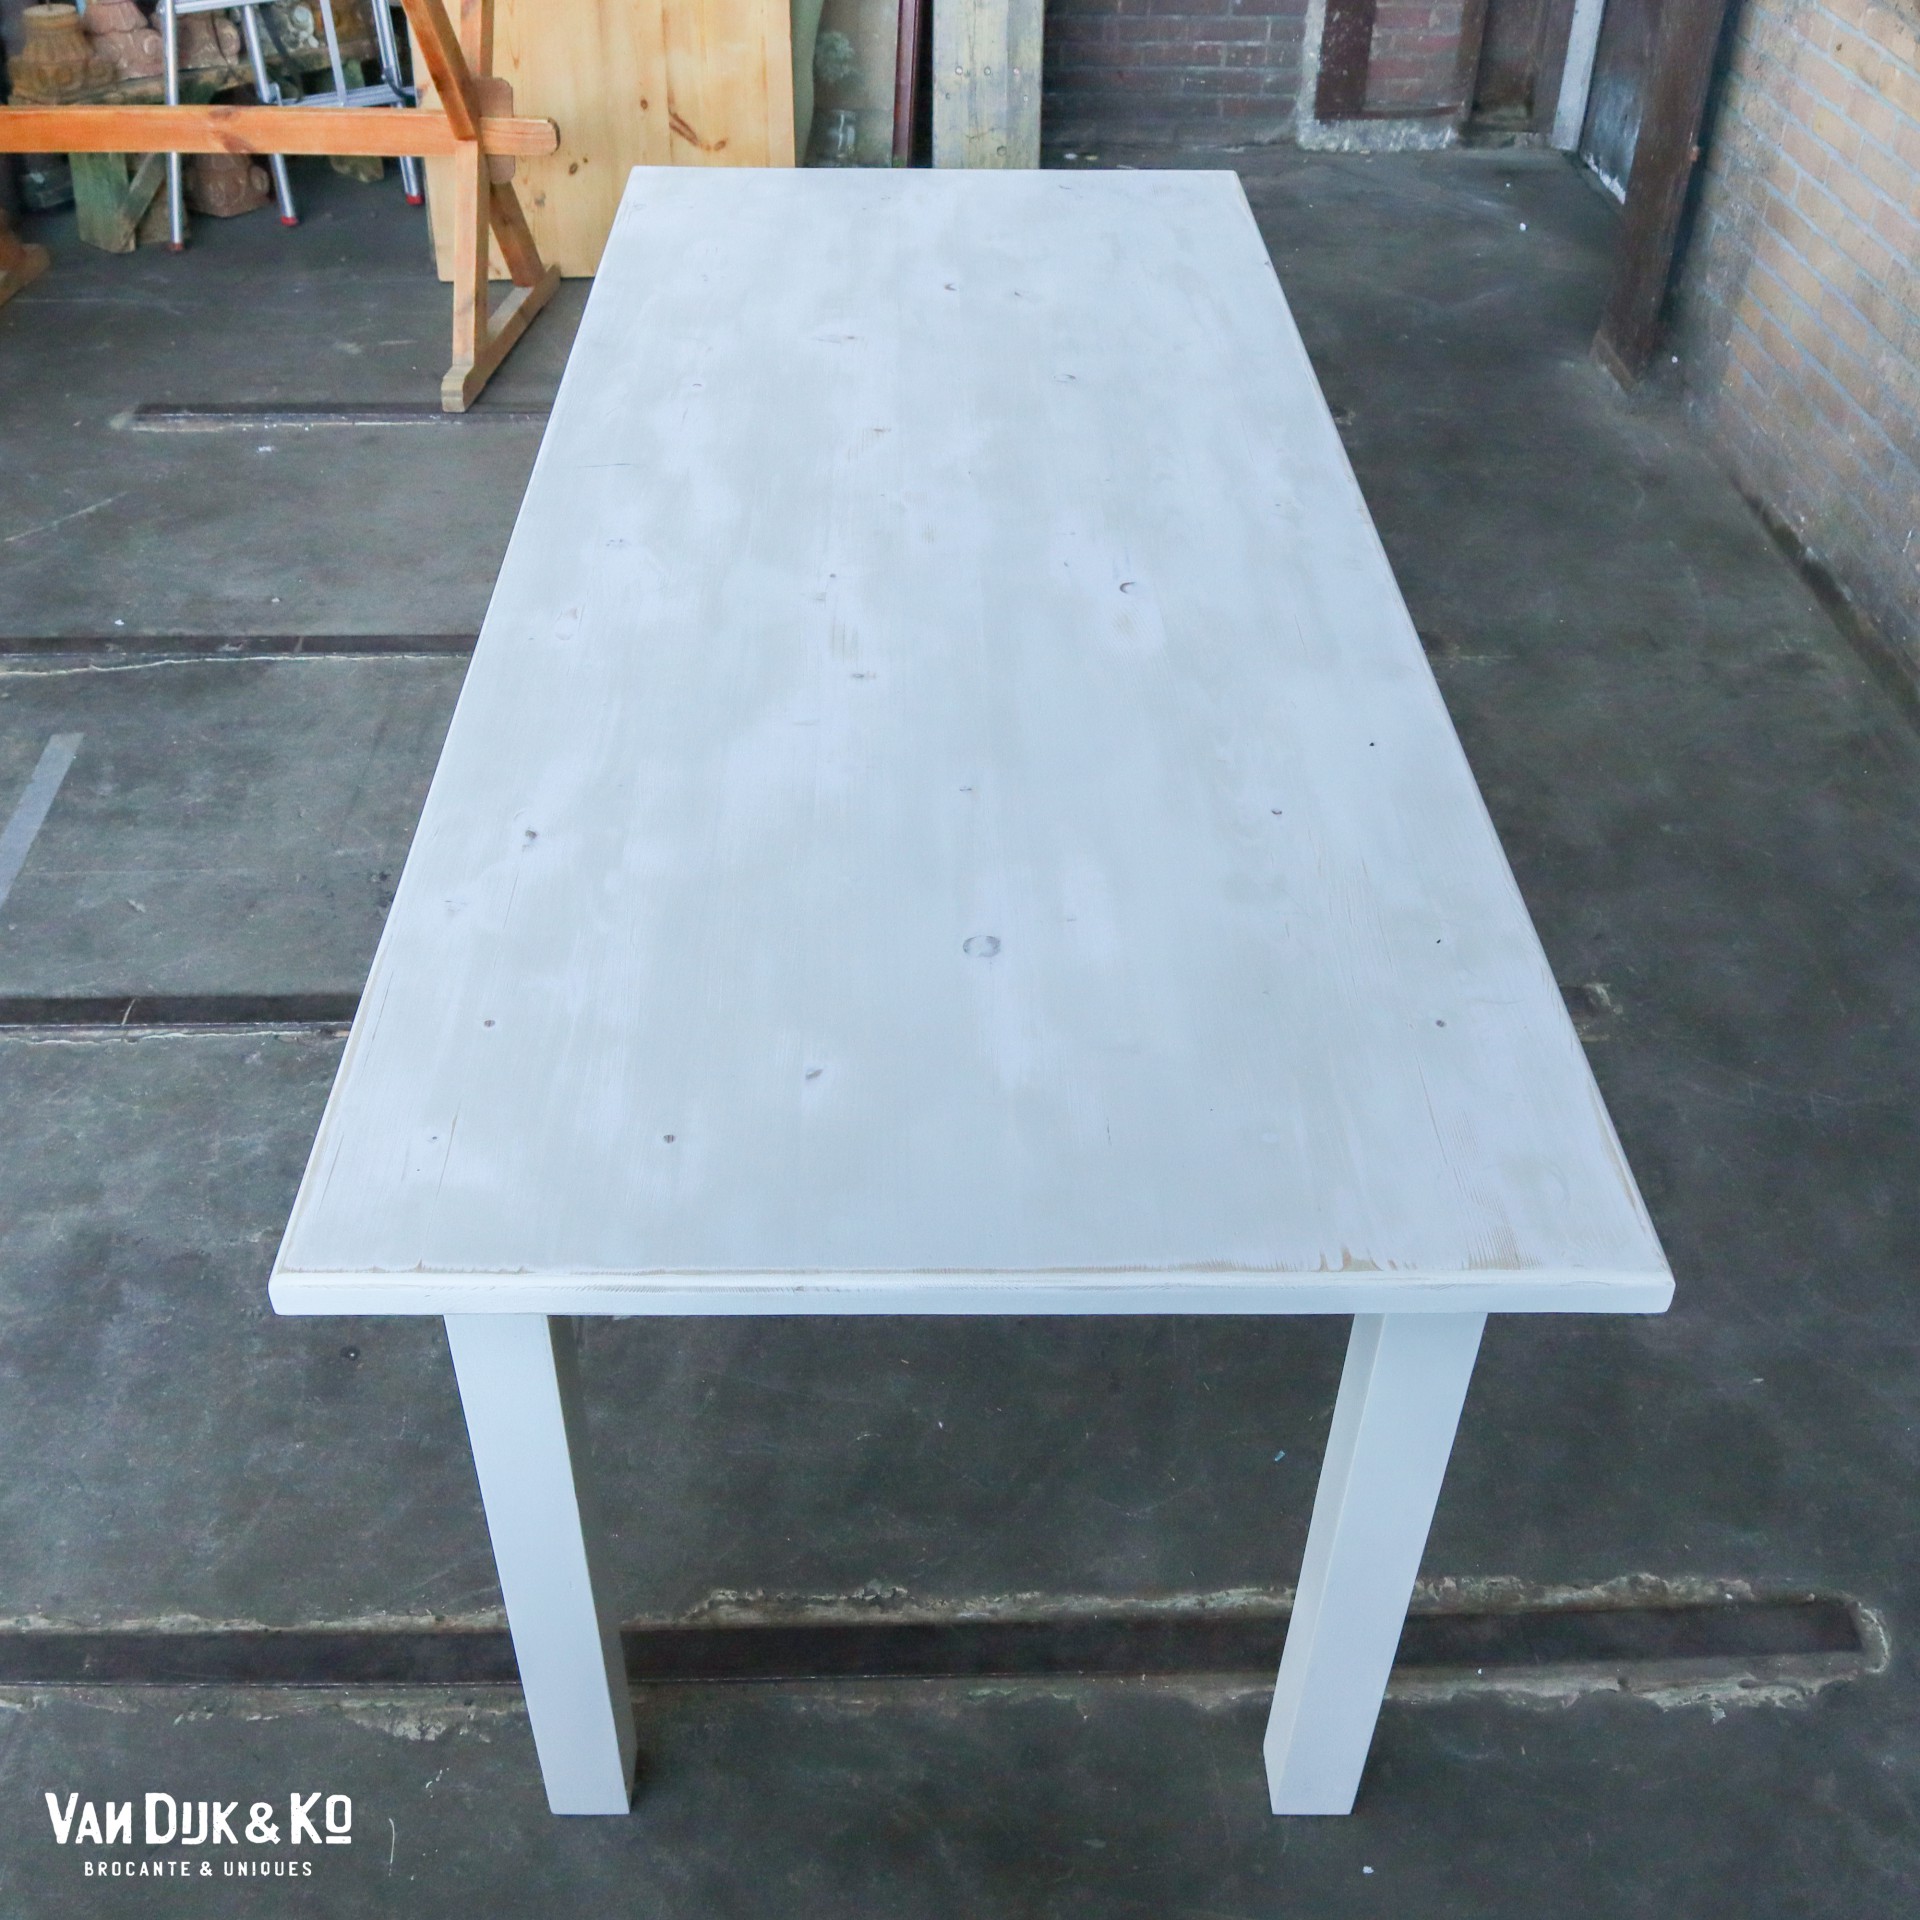 Speel Antipoison dorst Witte houten tafel » Van Dijk & Ko